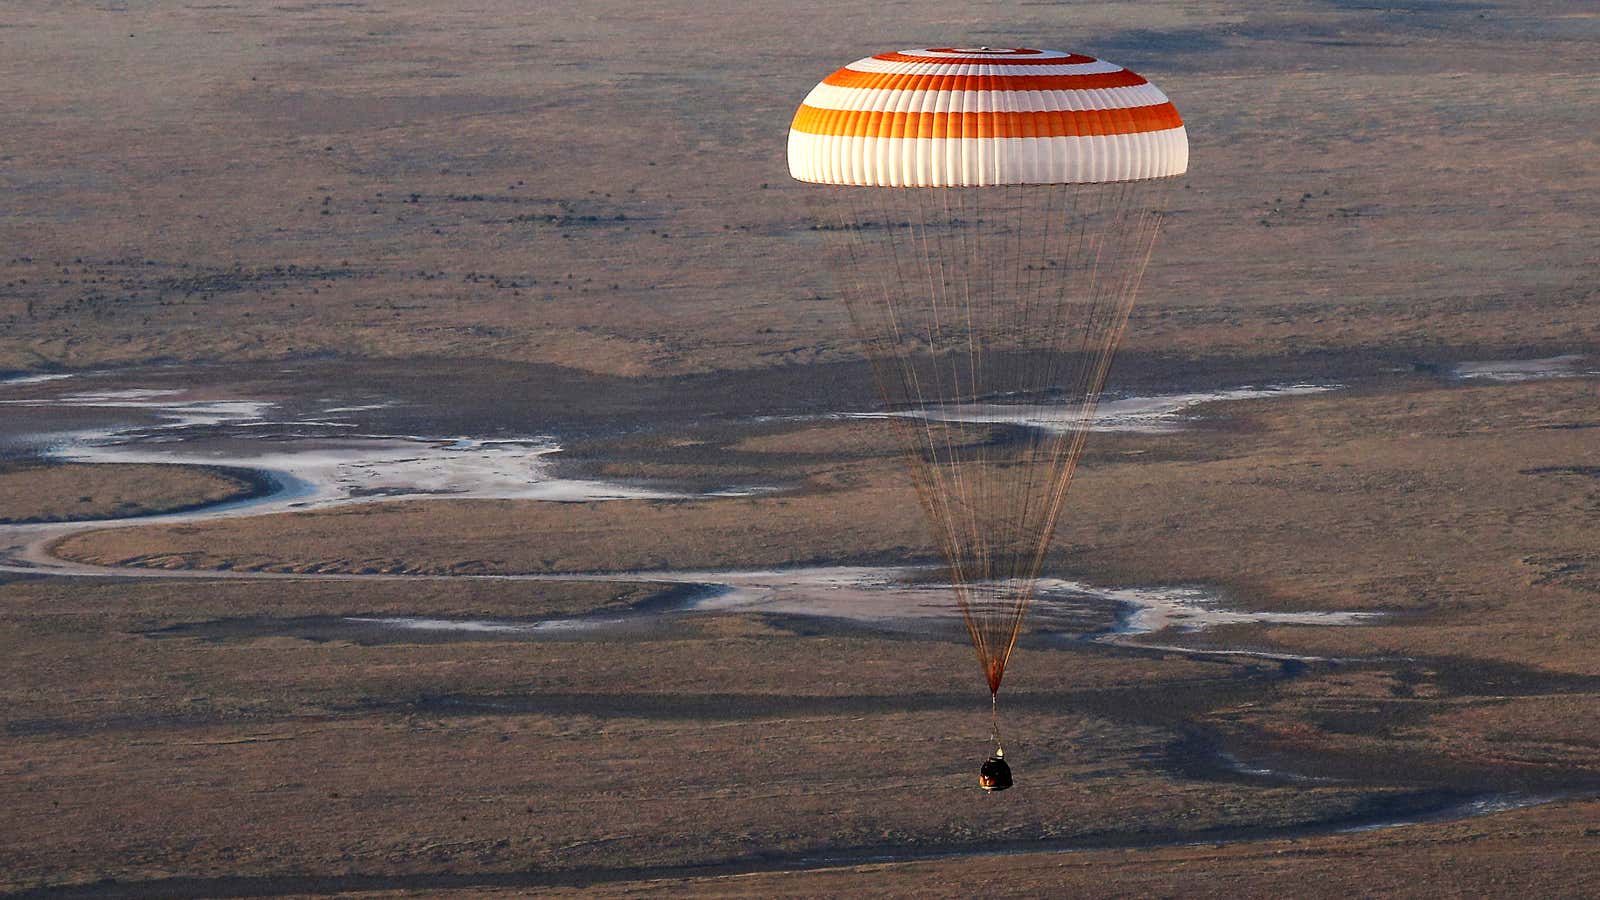 A Soyuz capsule lands in 2016.